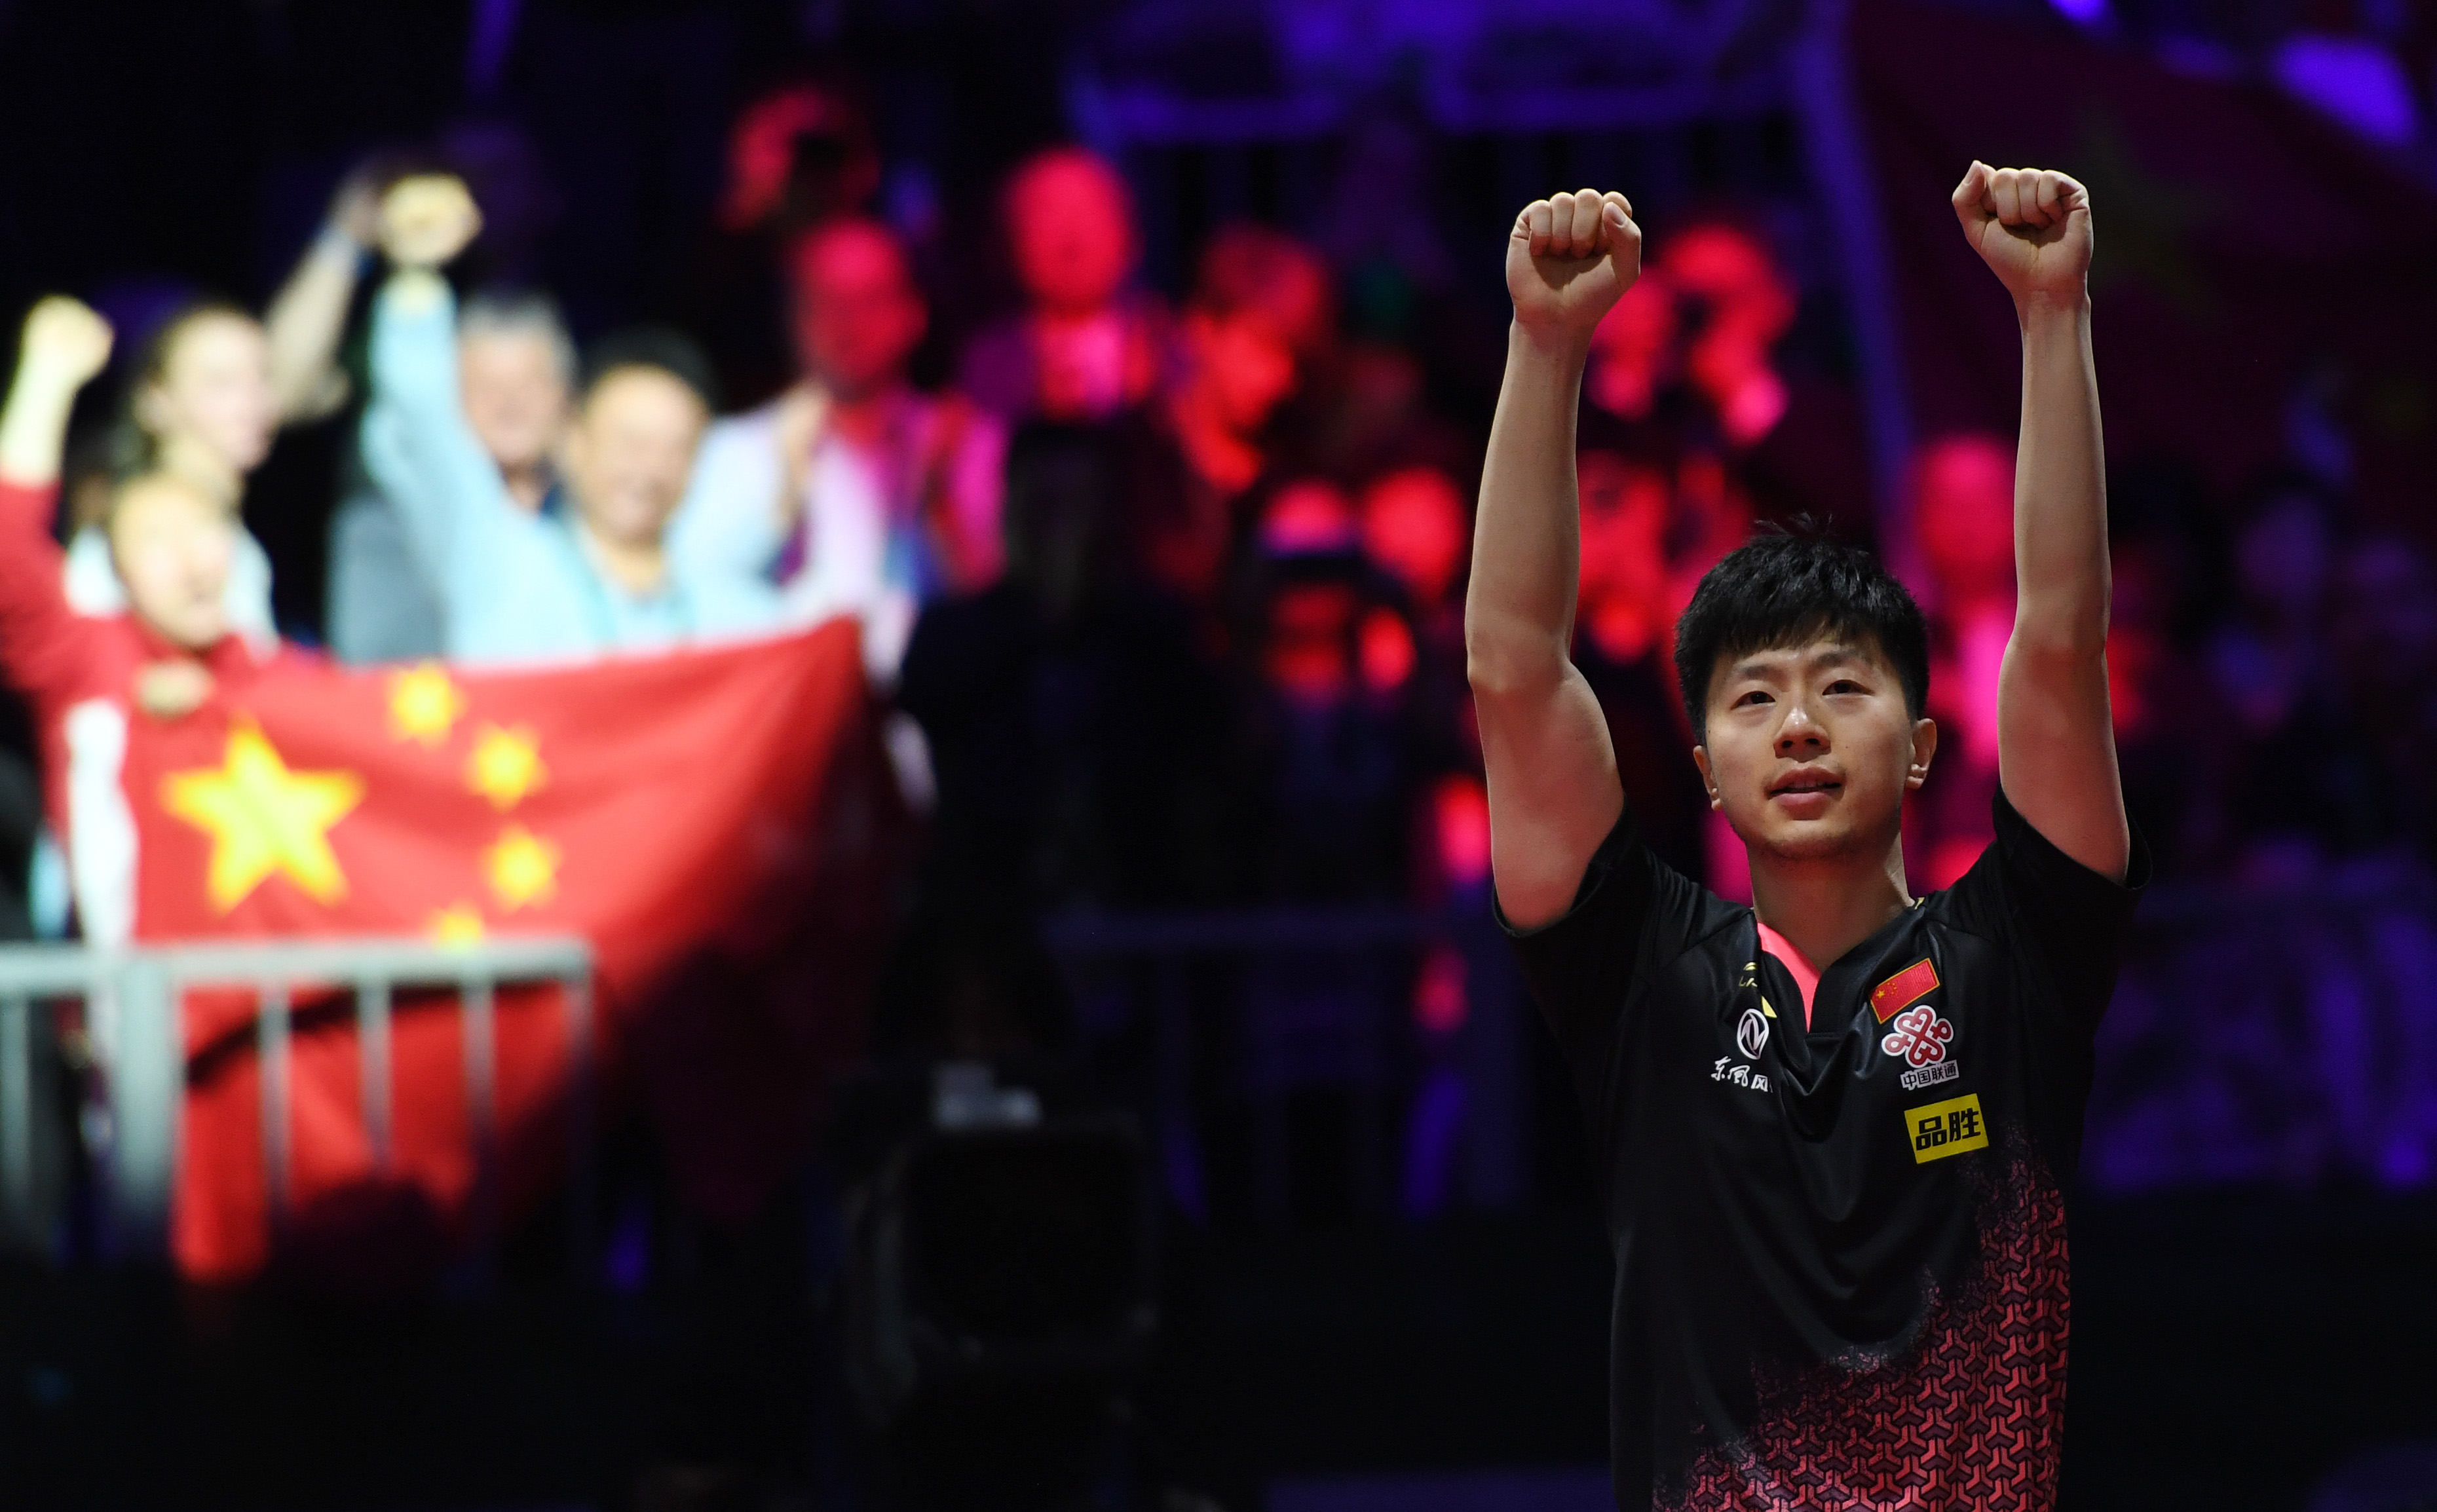 当日,在匈牙利布达佩斯举行的2019世界乒乓球锦标赛男单决赛中,中国